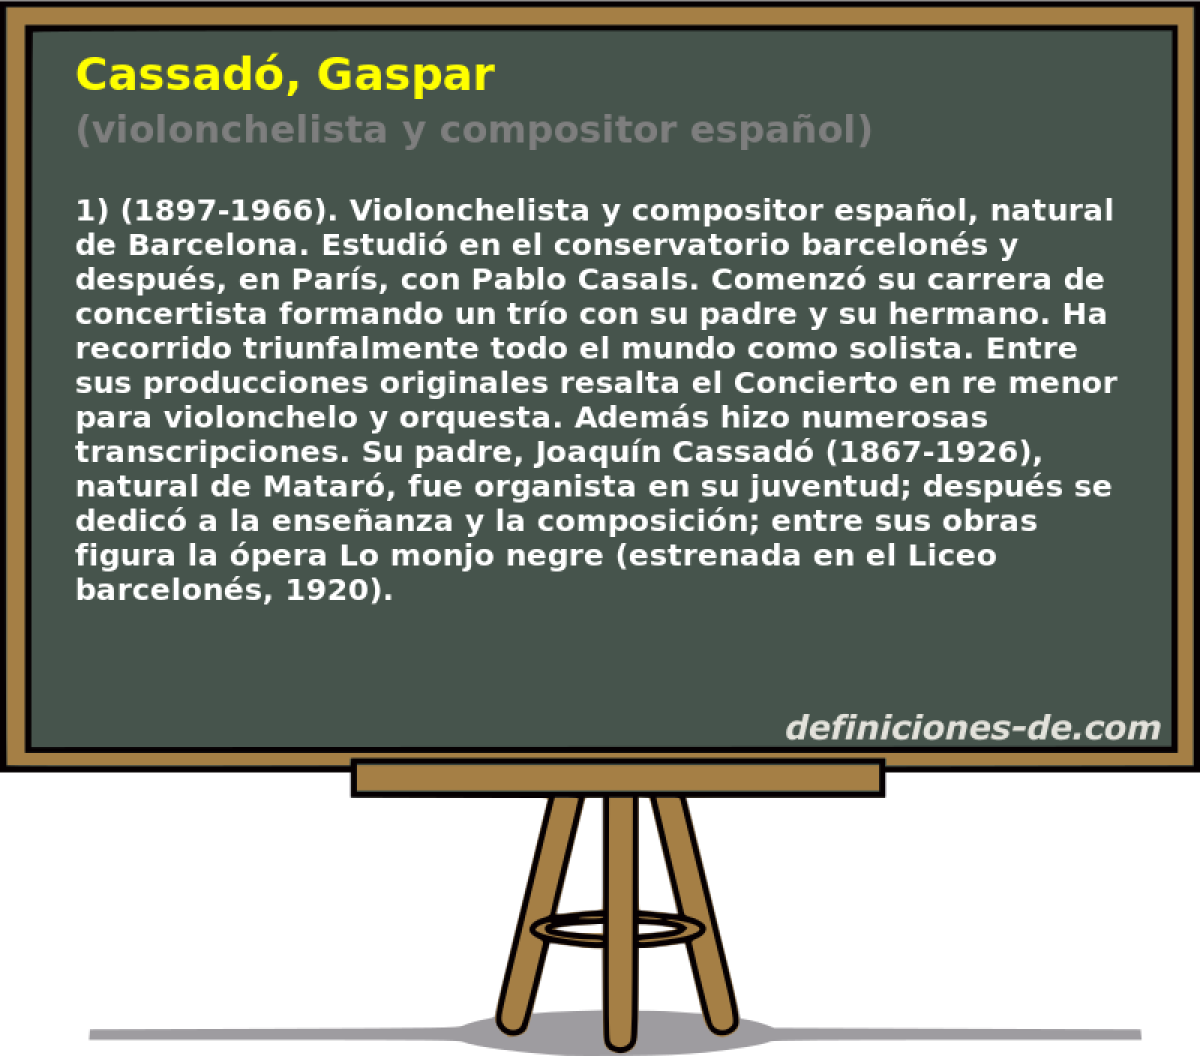 Cassad, Gaspar (violonchelista y compositor espaol)